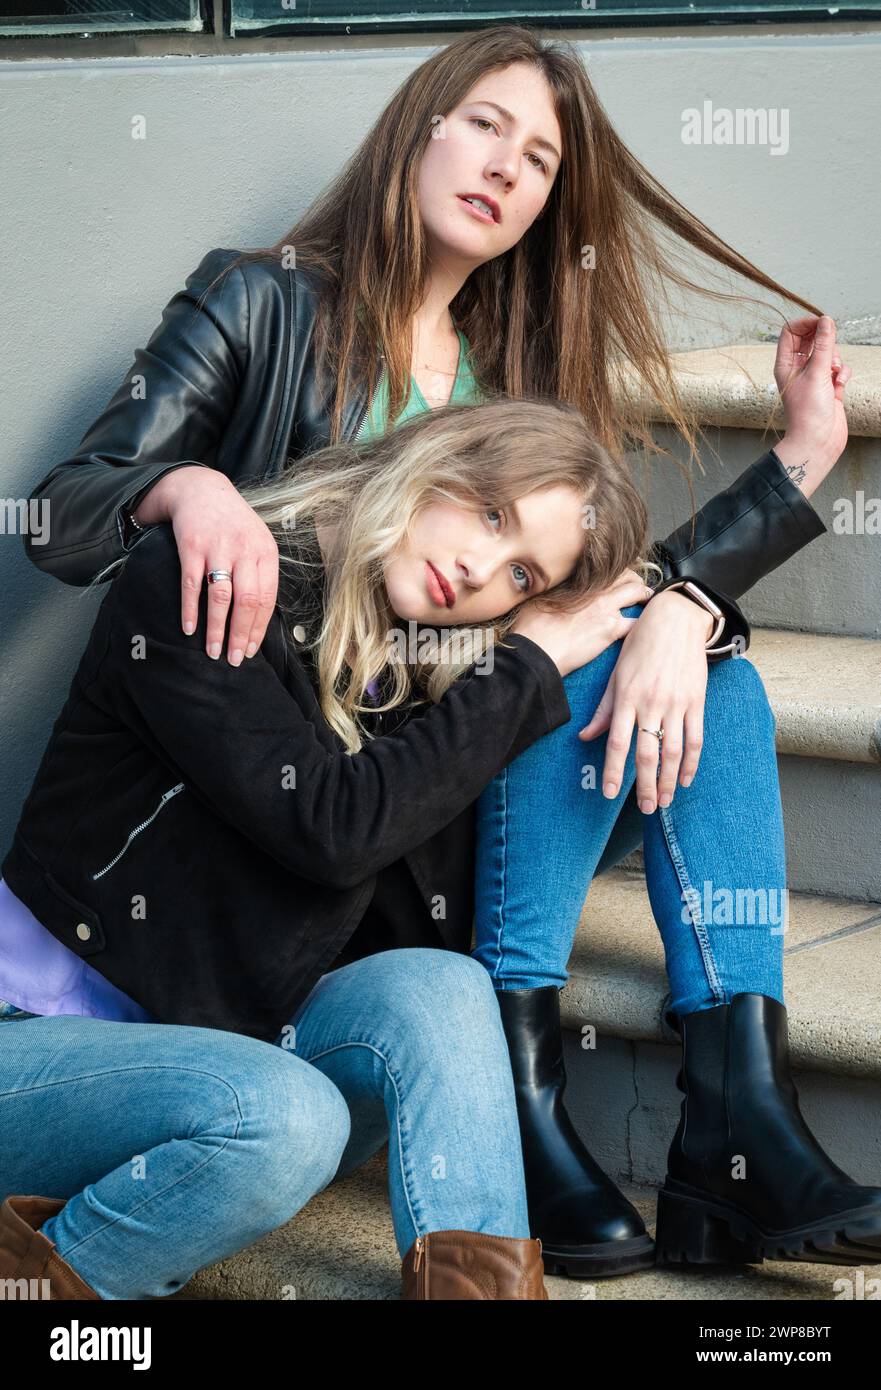 Zwei Mädchen, eine Brünette und eine Blondine, sitzen auf der Stadtreppe Stockfoto